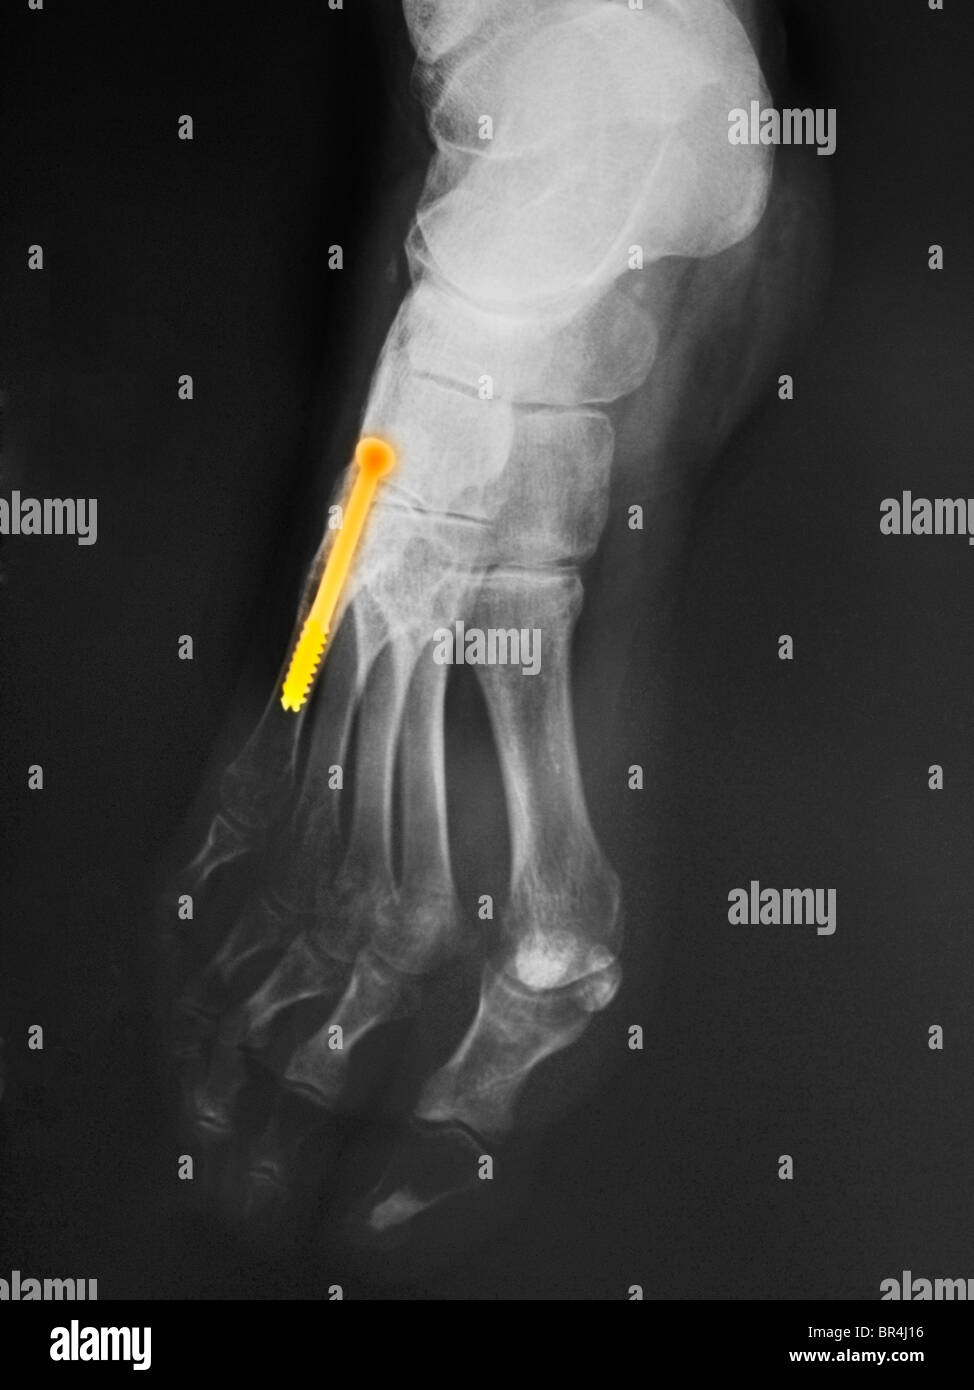 Raggi X della gamba di un 43 anno vecchia donna che avevano un intervento chirurgico sul quinto metatarso dove vi è una vite nell'osso Foto Stock